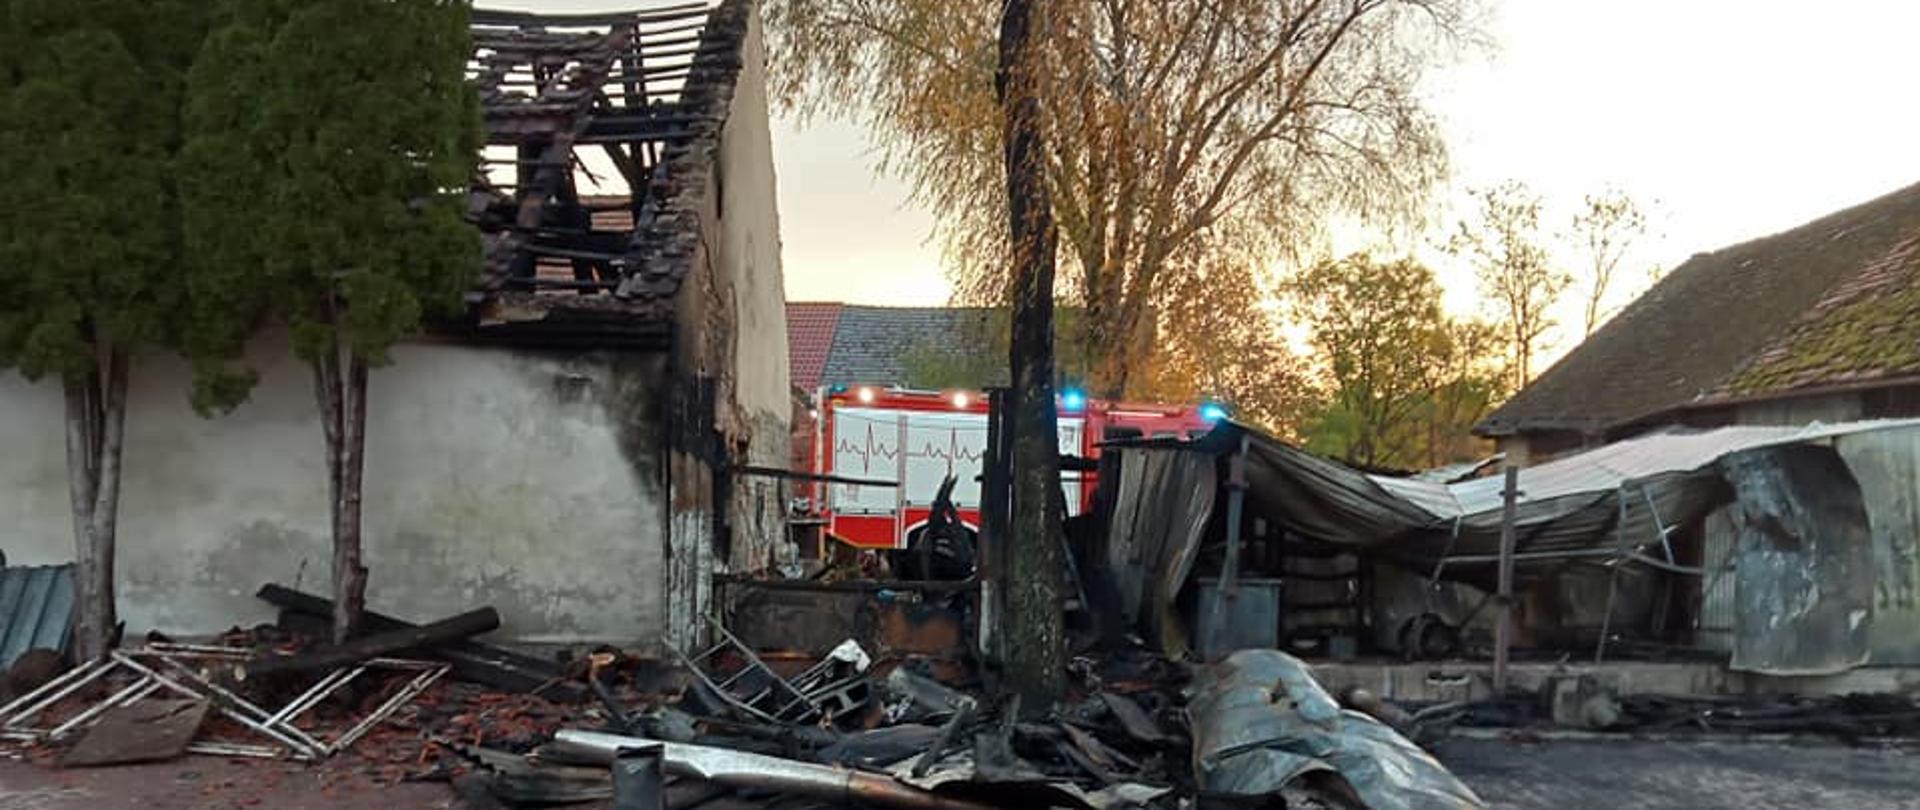 Pożar zabudowań gospodarczych w miejscowości Szydłowice